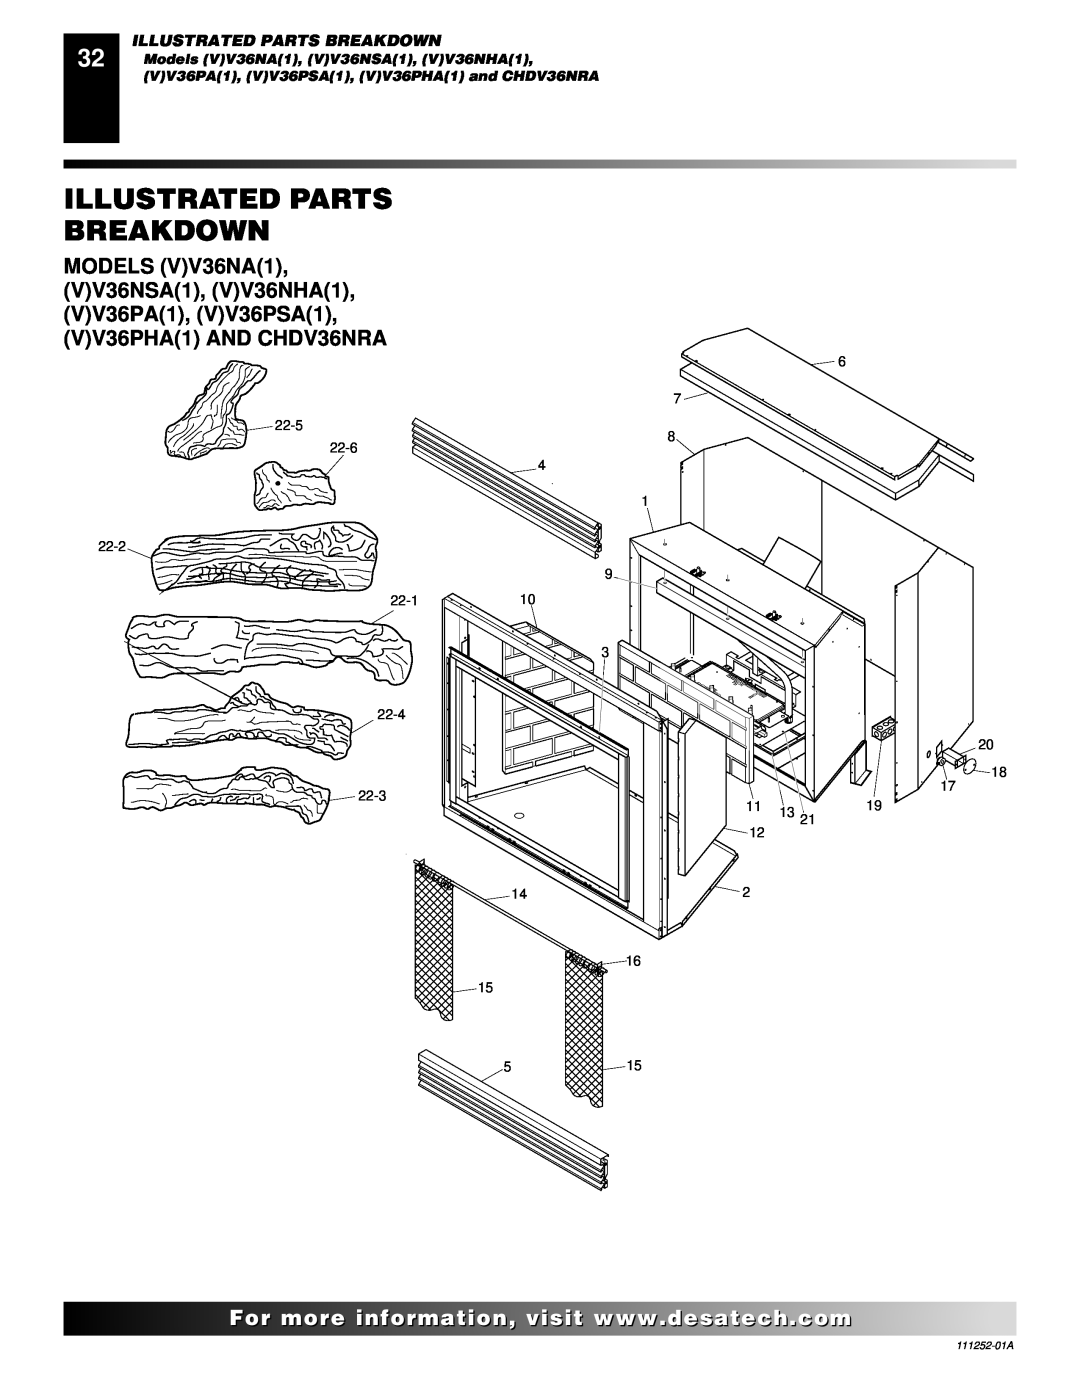 Desa Illustrated Parts Breakdown, Models VV36NA1, VV36NSA1, VV36NHA1, VV36PA1, VV36PSA1, VV36PHA1 and CHDV36NRA 